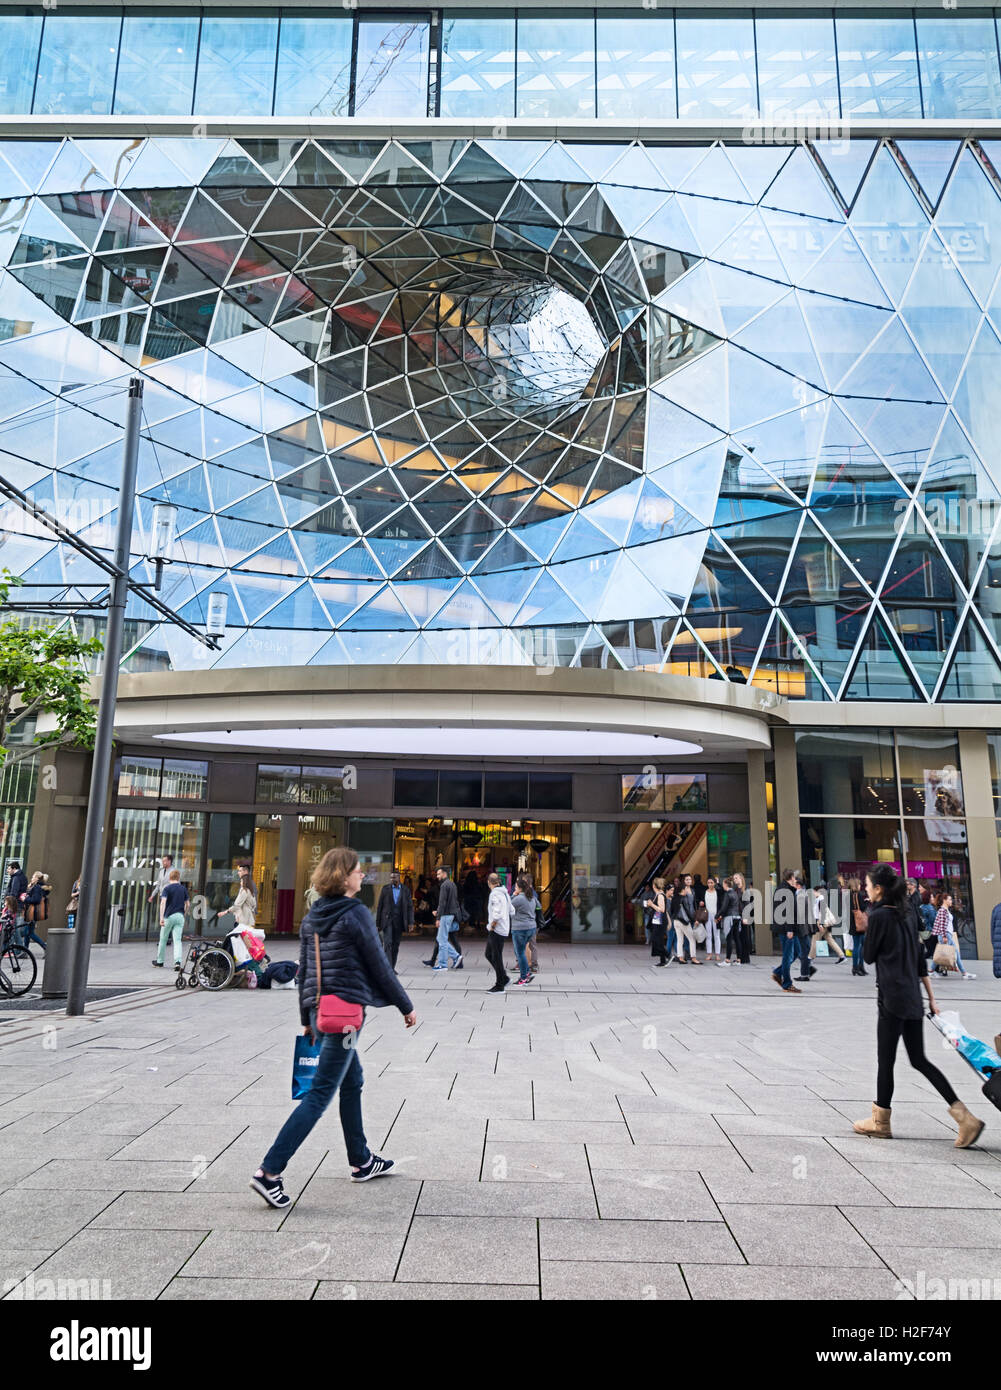 FRANKFURT AM MAIN, Deutschland - 18. Mai 2016: MyZeil - Einkaufszentrum im Zentrum von Frankfurt. Es wurde von römischen Architekten Mas entworfen. Stockfoto